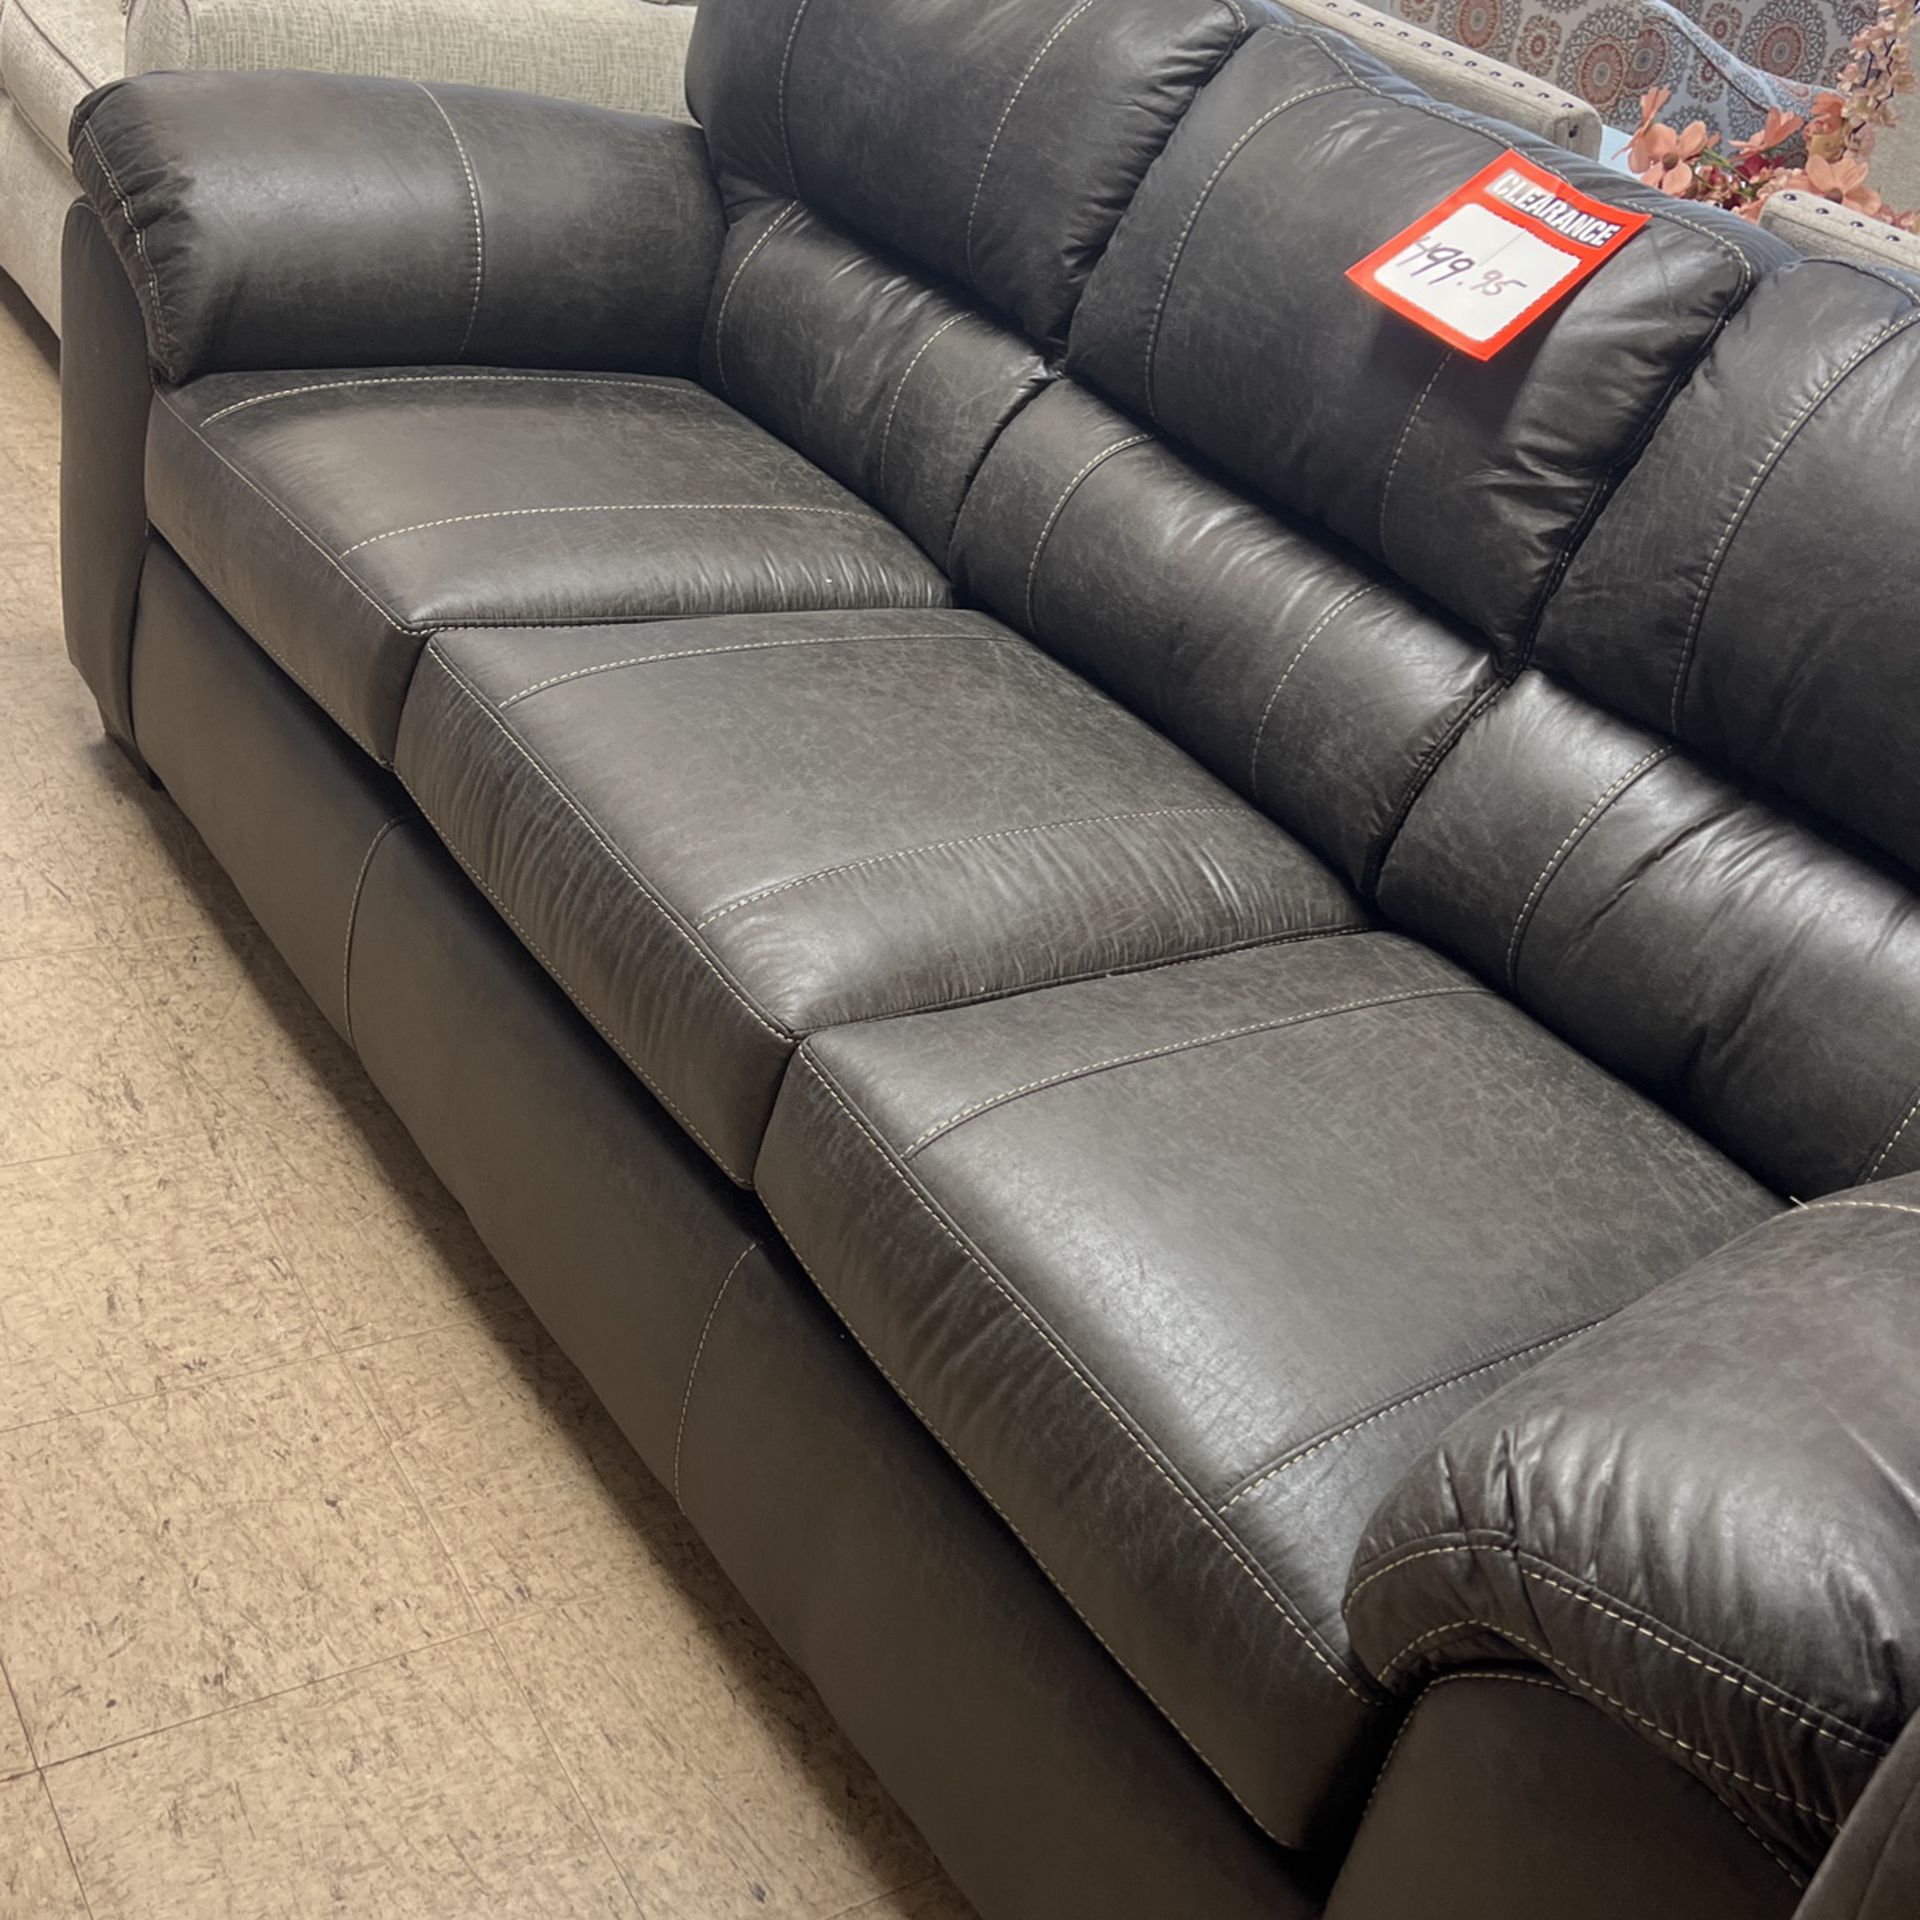 Brand new sofa loveseat for $1000